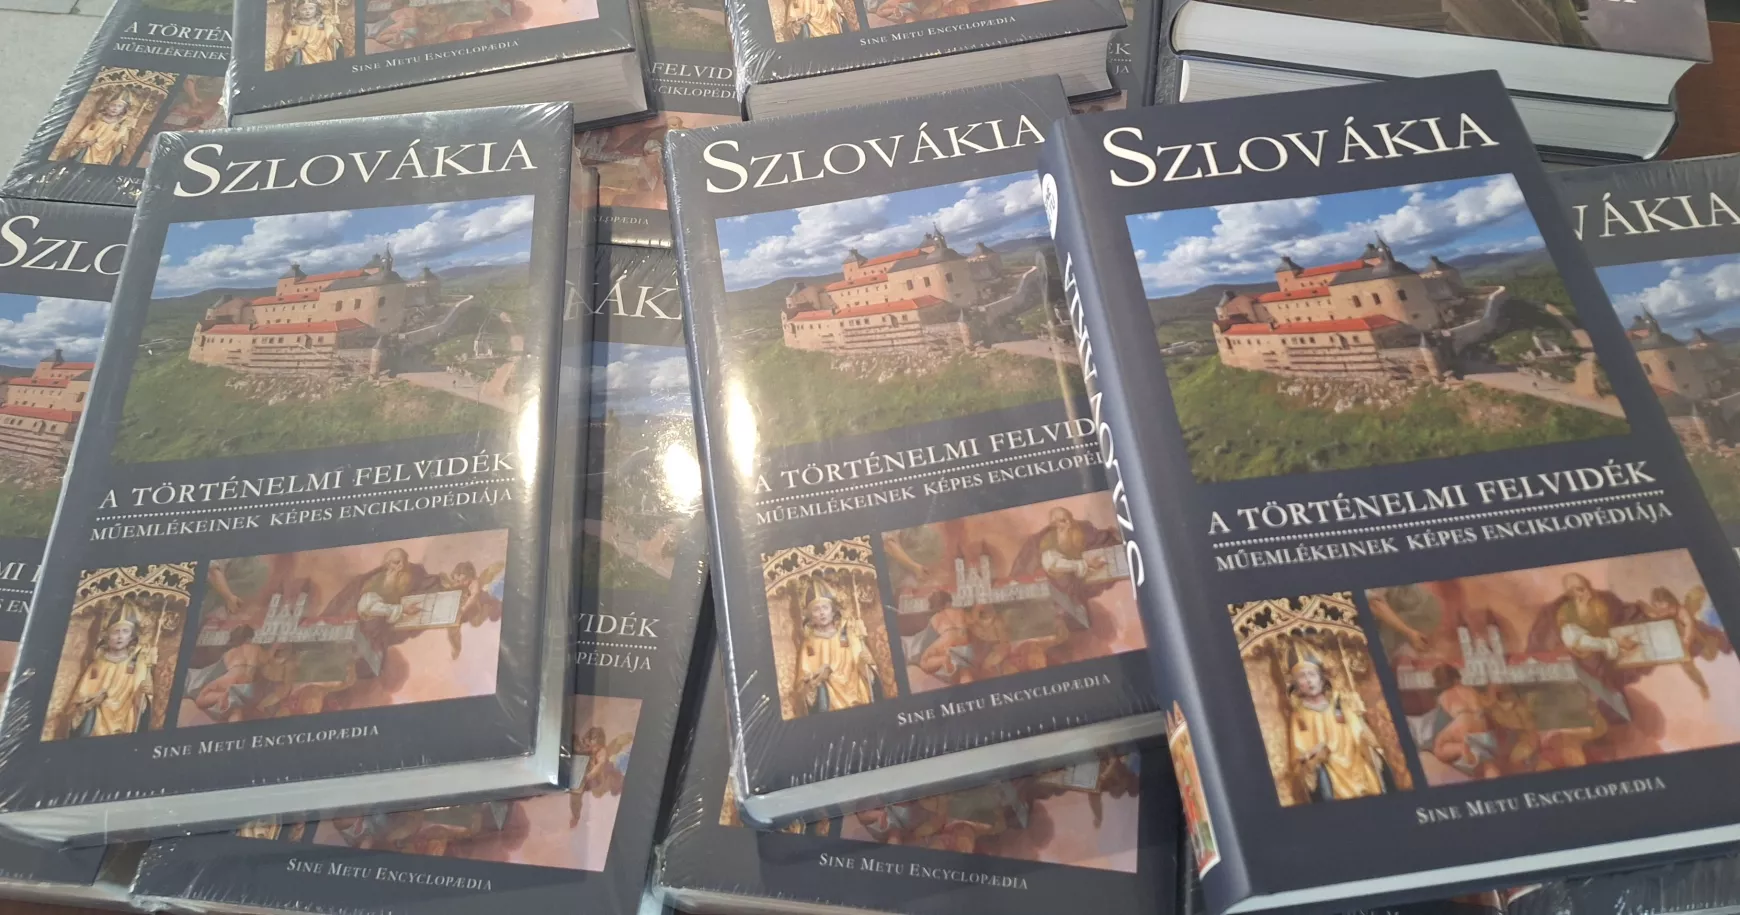 szlovakia-a-tortenelmi-felvidek-muemlekeinek-kepes-enciklopediaja